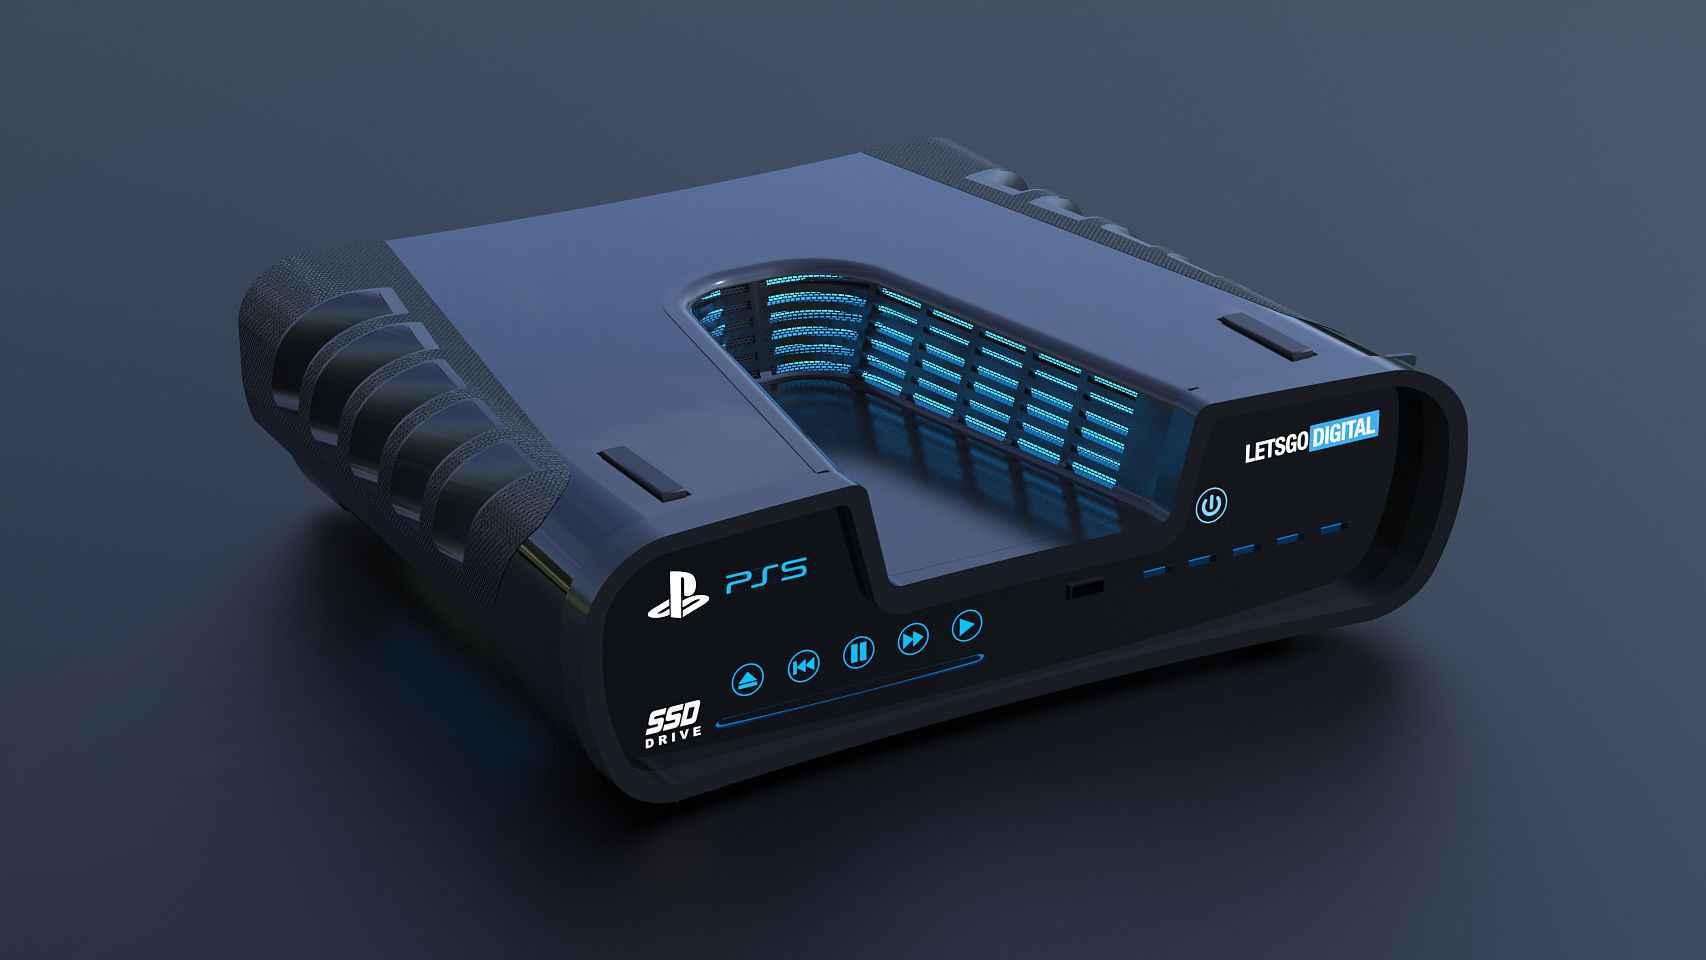 Concepto de la Playstation 5 basado en el kit de desarrollo